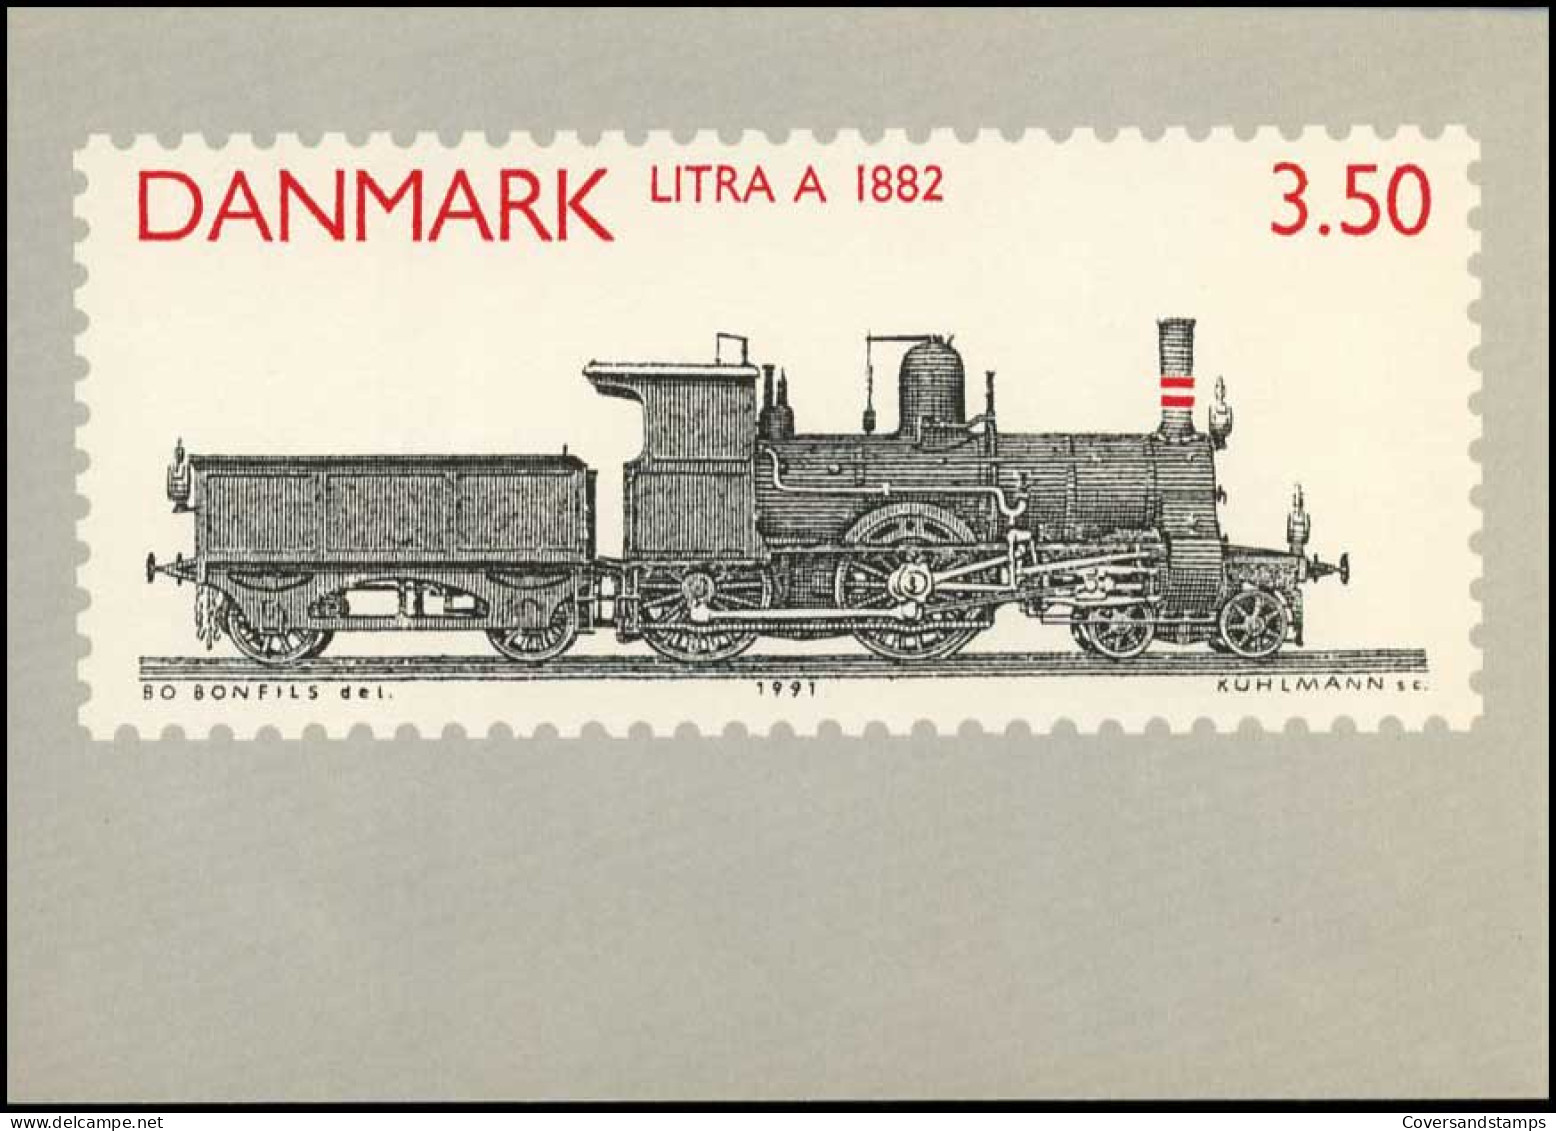  Denemarken - Trein - Enteros Postales